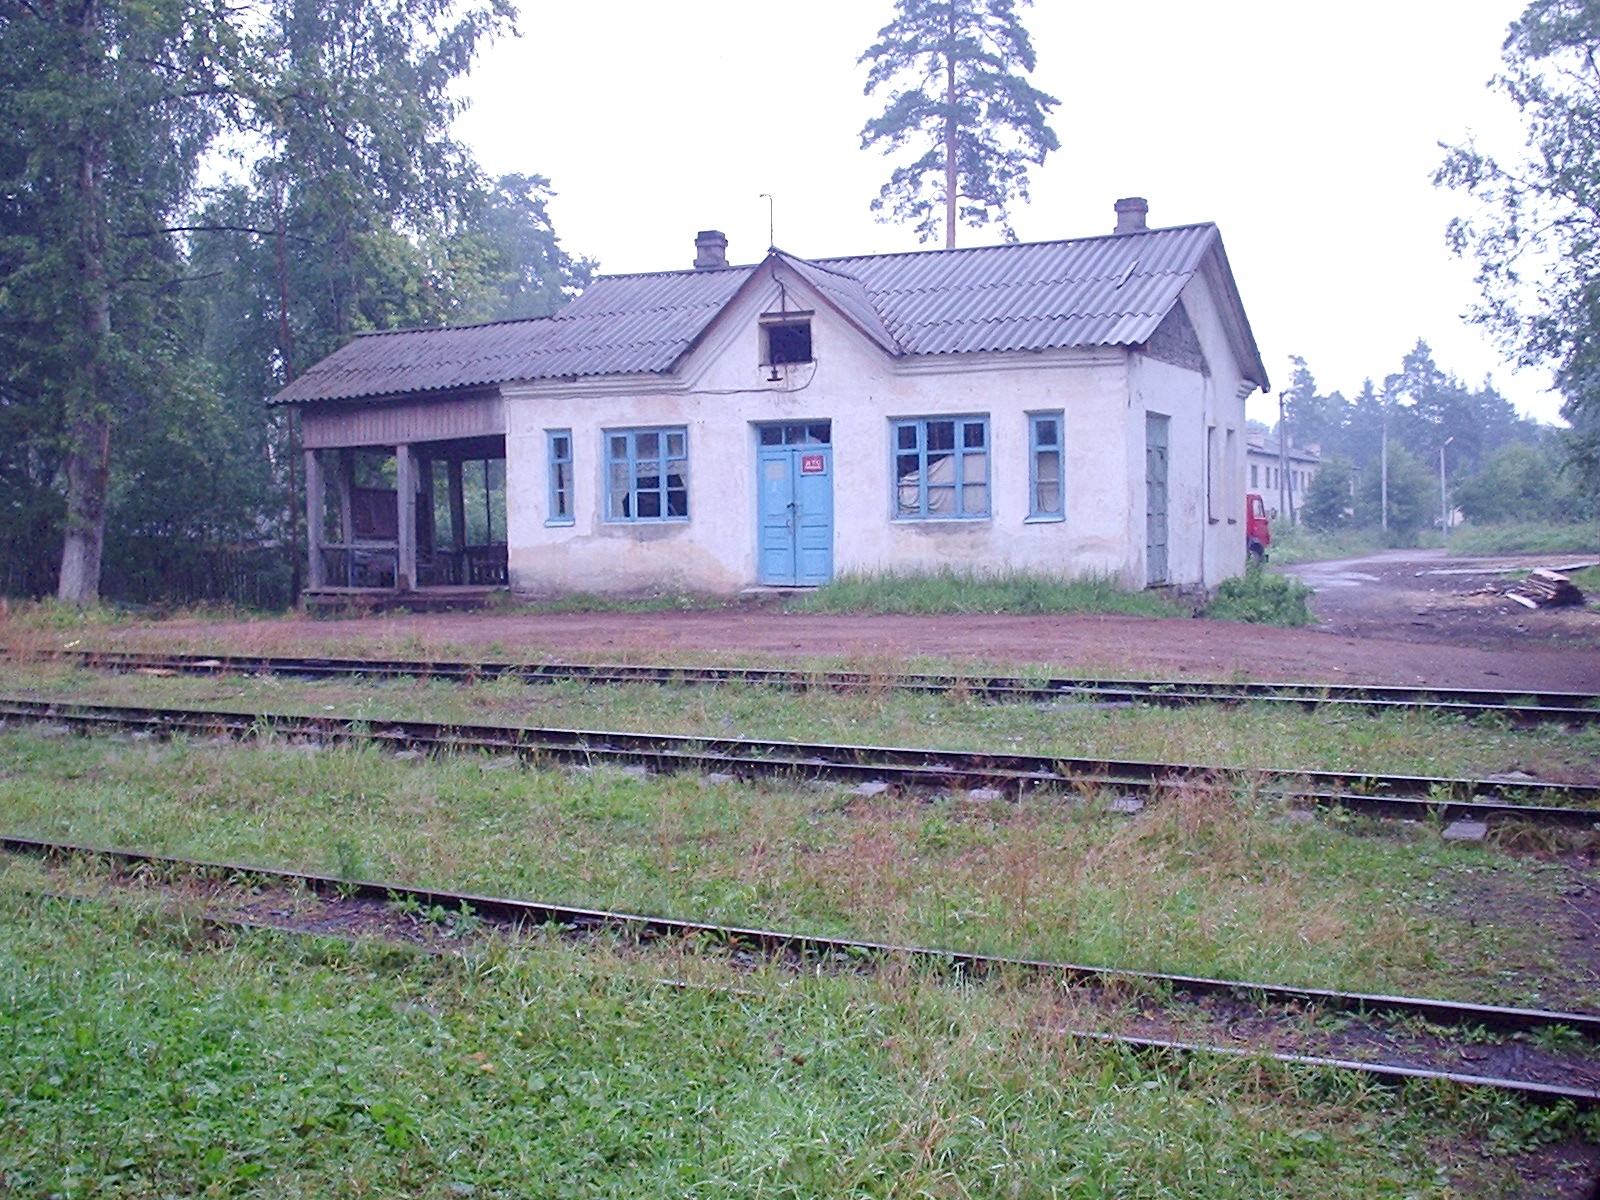 Узкоколейная железная дорога торфопредприятия «Ларьян»  - фотографии, сделанные в 2006 году (часть 6)